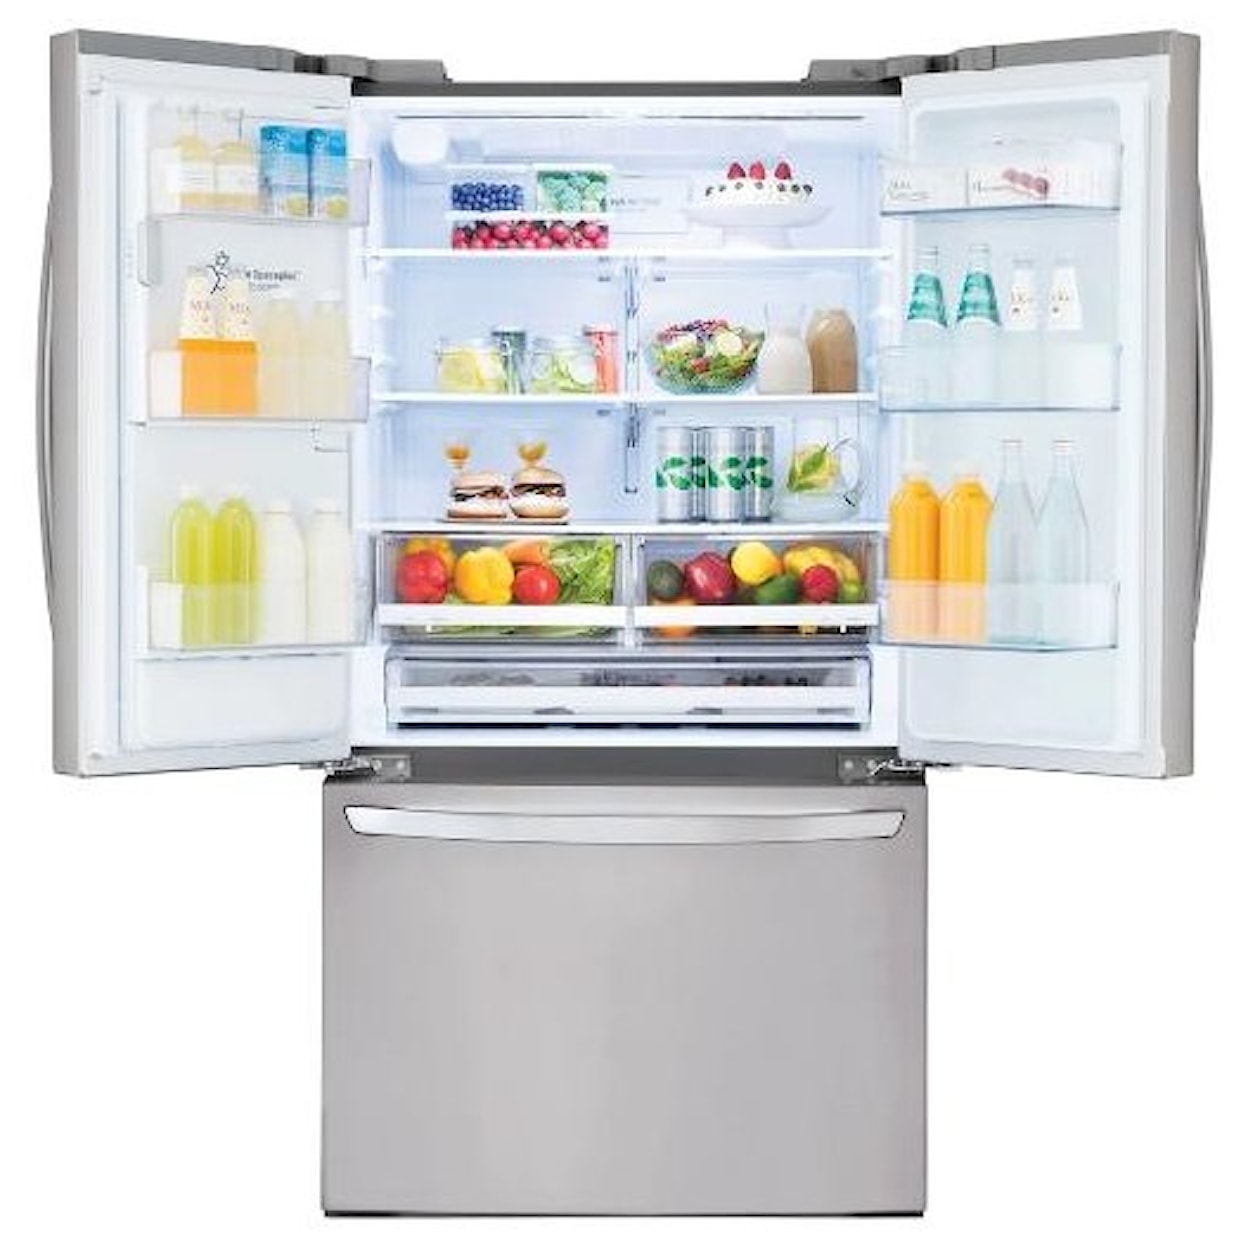 LG Appliances French Door Refrigerators 26 cu. French Door Refrigerator